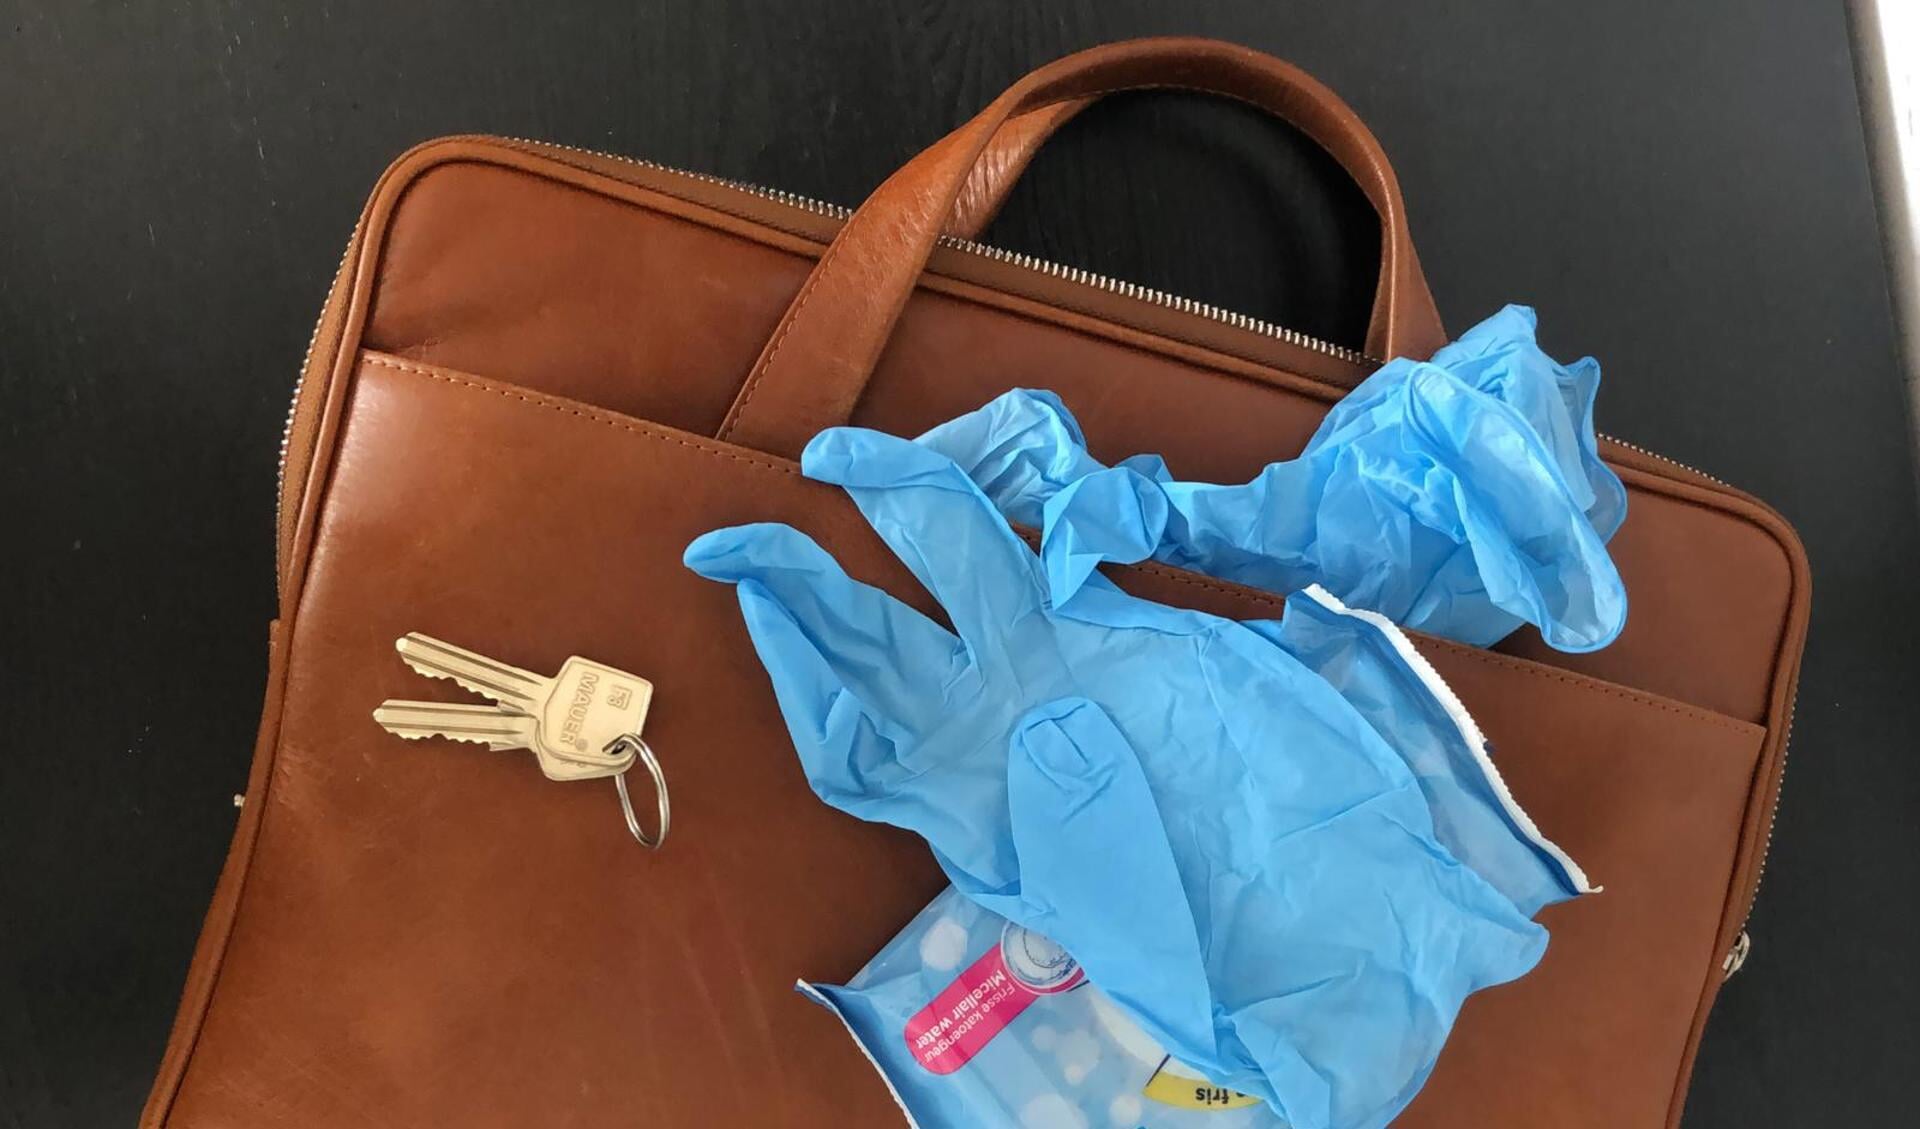 In de tas van de makelaar zitten naast sleutels tegenwoordig ook plastic handschoenen en desinfecterende vloeistof. 